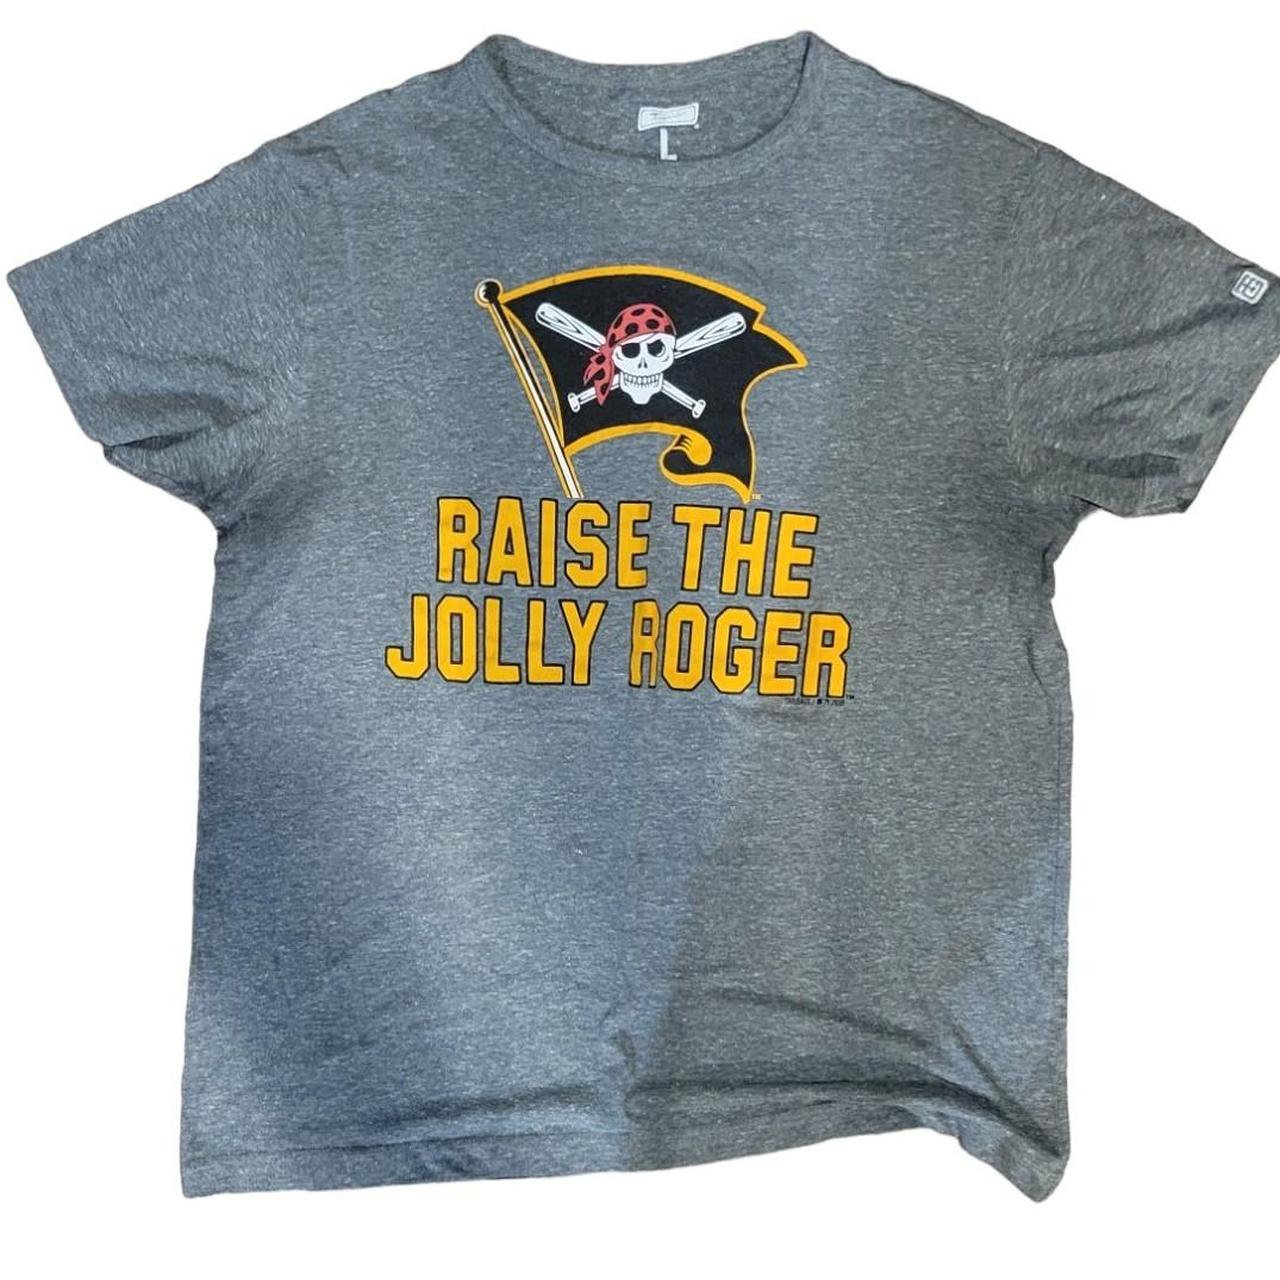 Raise the Jolly Roger!